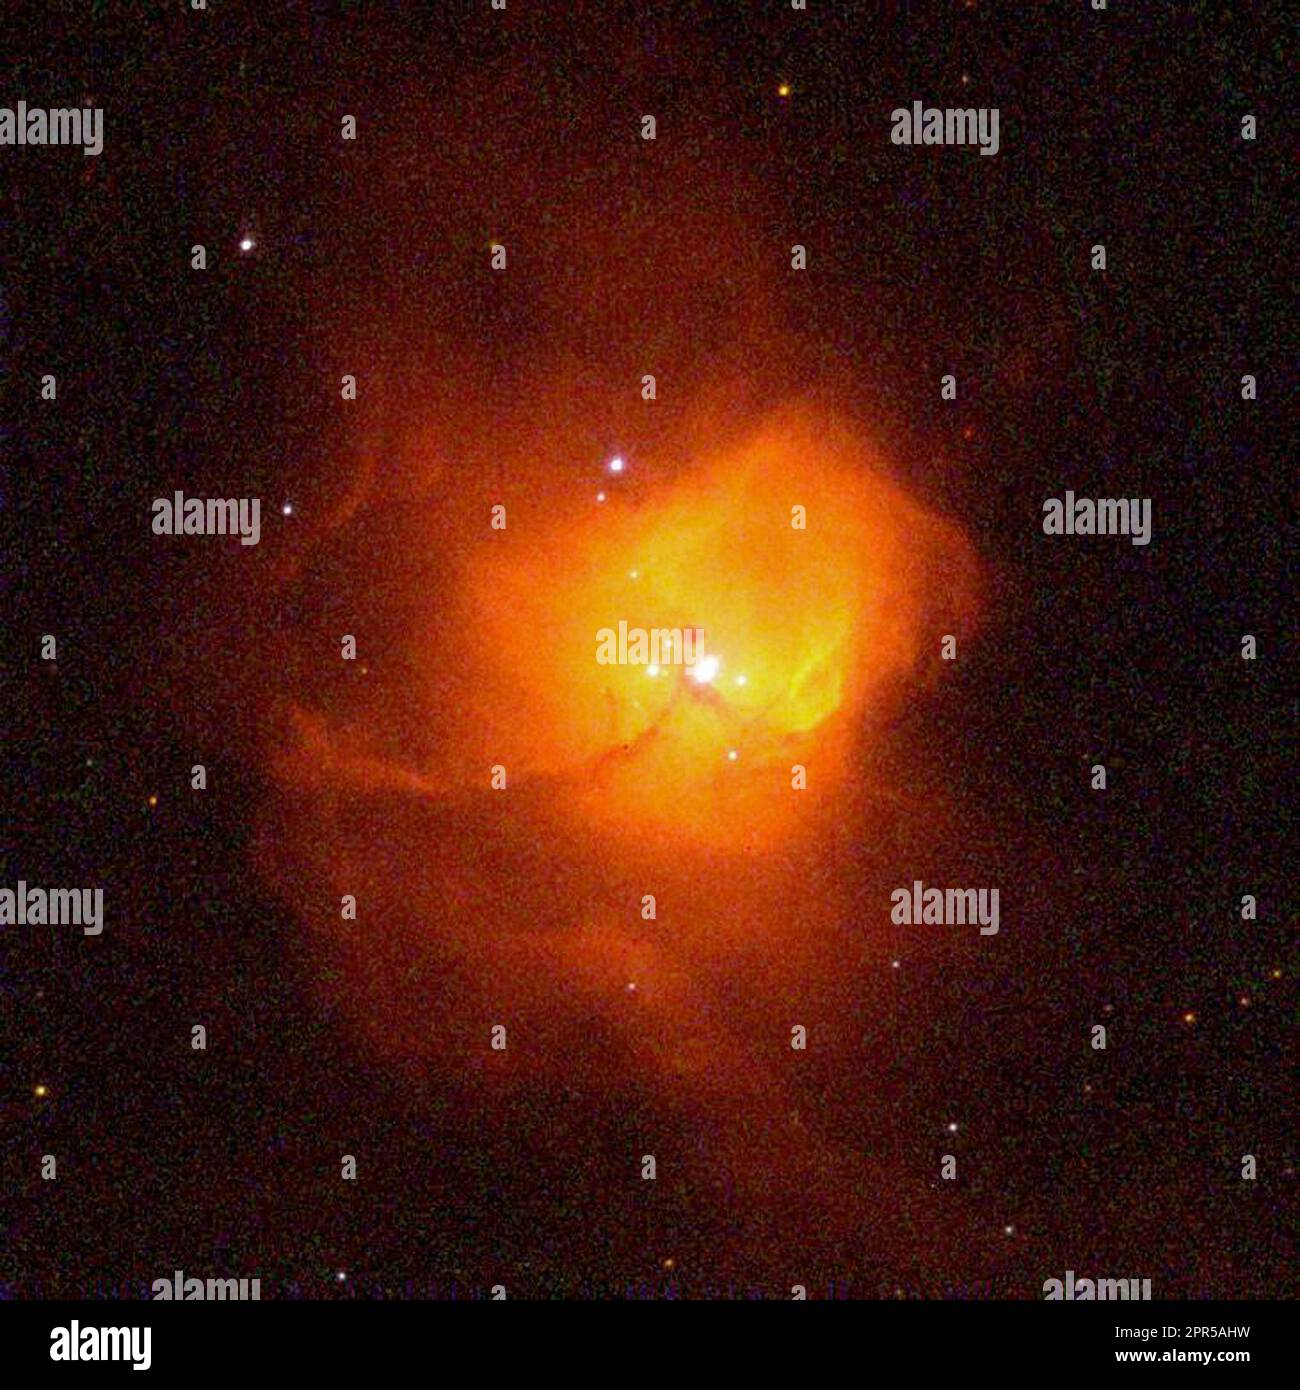 Ein NASA-Hubble-Weltraumteleskop "Family Portrait" von Jungen, ultra-helle Sterne in ihren embryonalen Wolke aus glühenden Gasen verschachtelt. Die himmlische Entbindungsstation, genannt N81, 200.000 Lichtjahre entfernt in der Kleinen Magellanschen Wolke (SMC), eine kleine, unregelmäßige Satellitengalaxie unserer Milchstraße befindet. Exquisite Auflösung des Hubble ermöglicht Astronomen zu ermitteln 50 separaten Sterne fest in der nebula Kern 10 light verpackt - Durchmesser - etwas mehr als die doppelte Entfernung zwischen der Erde und der nächste Stern, unsere Sonne. Die nächsten paar Sterne ist nur 1/3 des ein Jahr auseinander (0,3 arcse Stockfoto